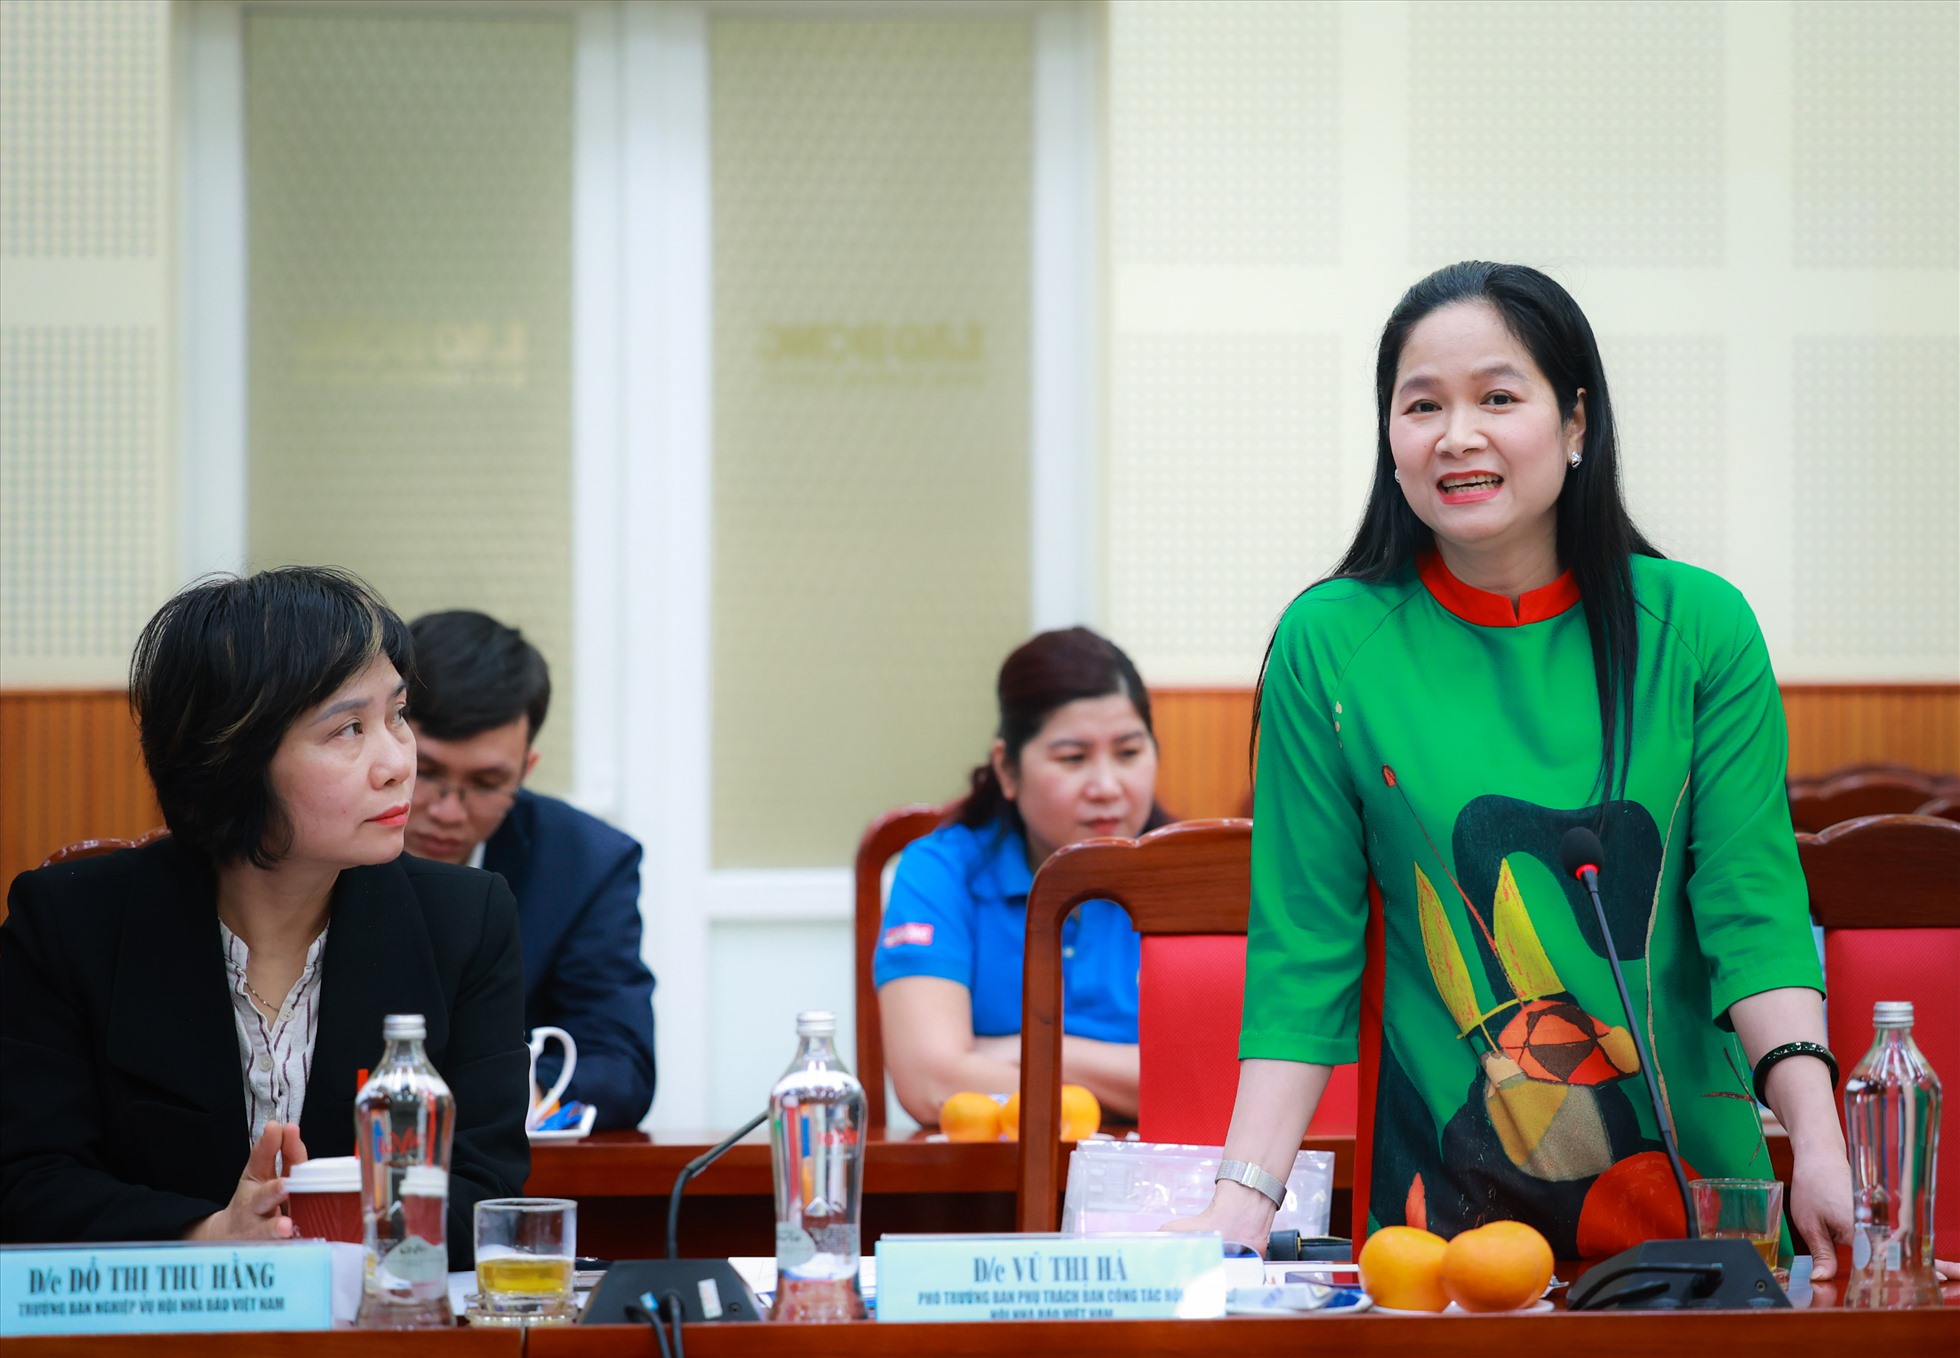 Bà Vũ Thị Hà, Phó Trưởng ban phụ trách Ban Công tác hội, Hội nhà báo Việt Nam. Ảnh: Hải Nguyễn